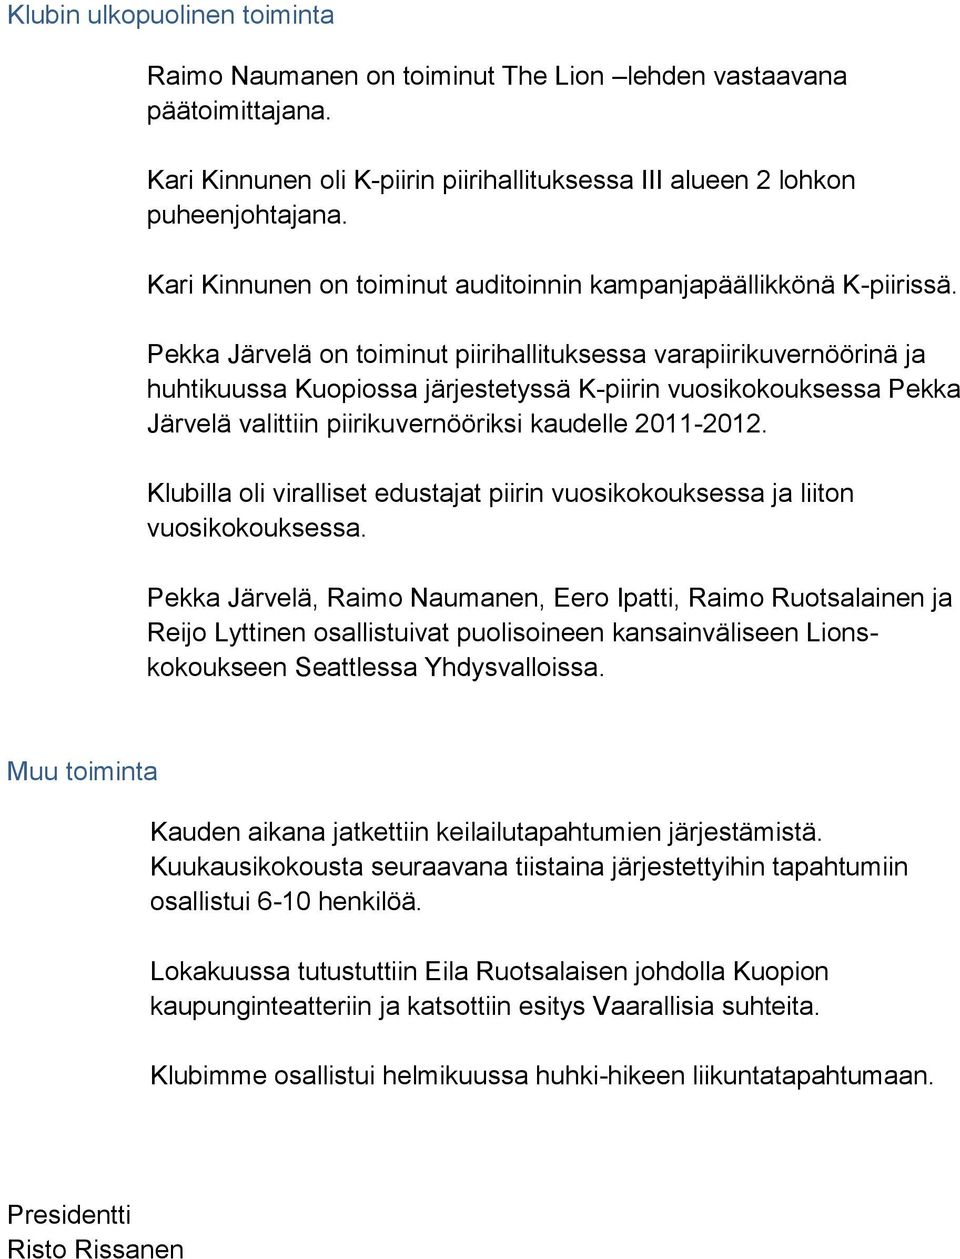 Pekka Järvelä on toiminut piirihallituksessa varapiirikuvernöörinä ja huhtikuussa Kuopiossa järjestetyssä K-piirin vuosikokouksessa Pekka Järvelä valittiin piirikuvernööriksi kaudelle 2011-2012.